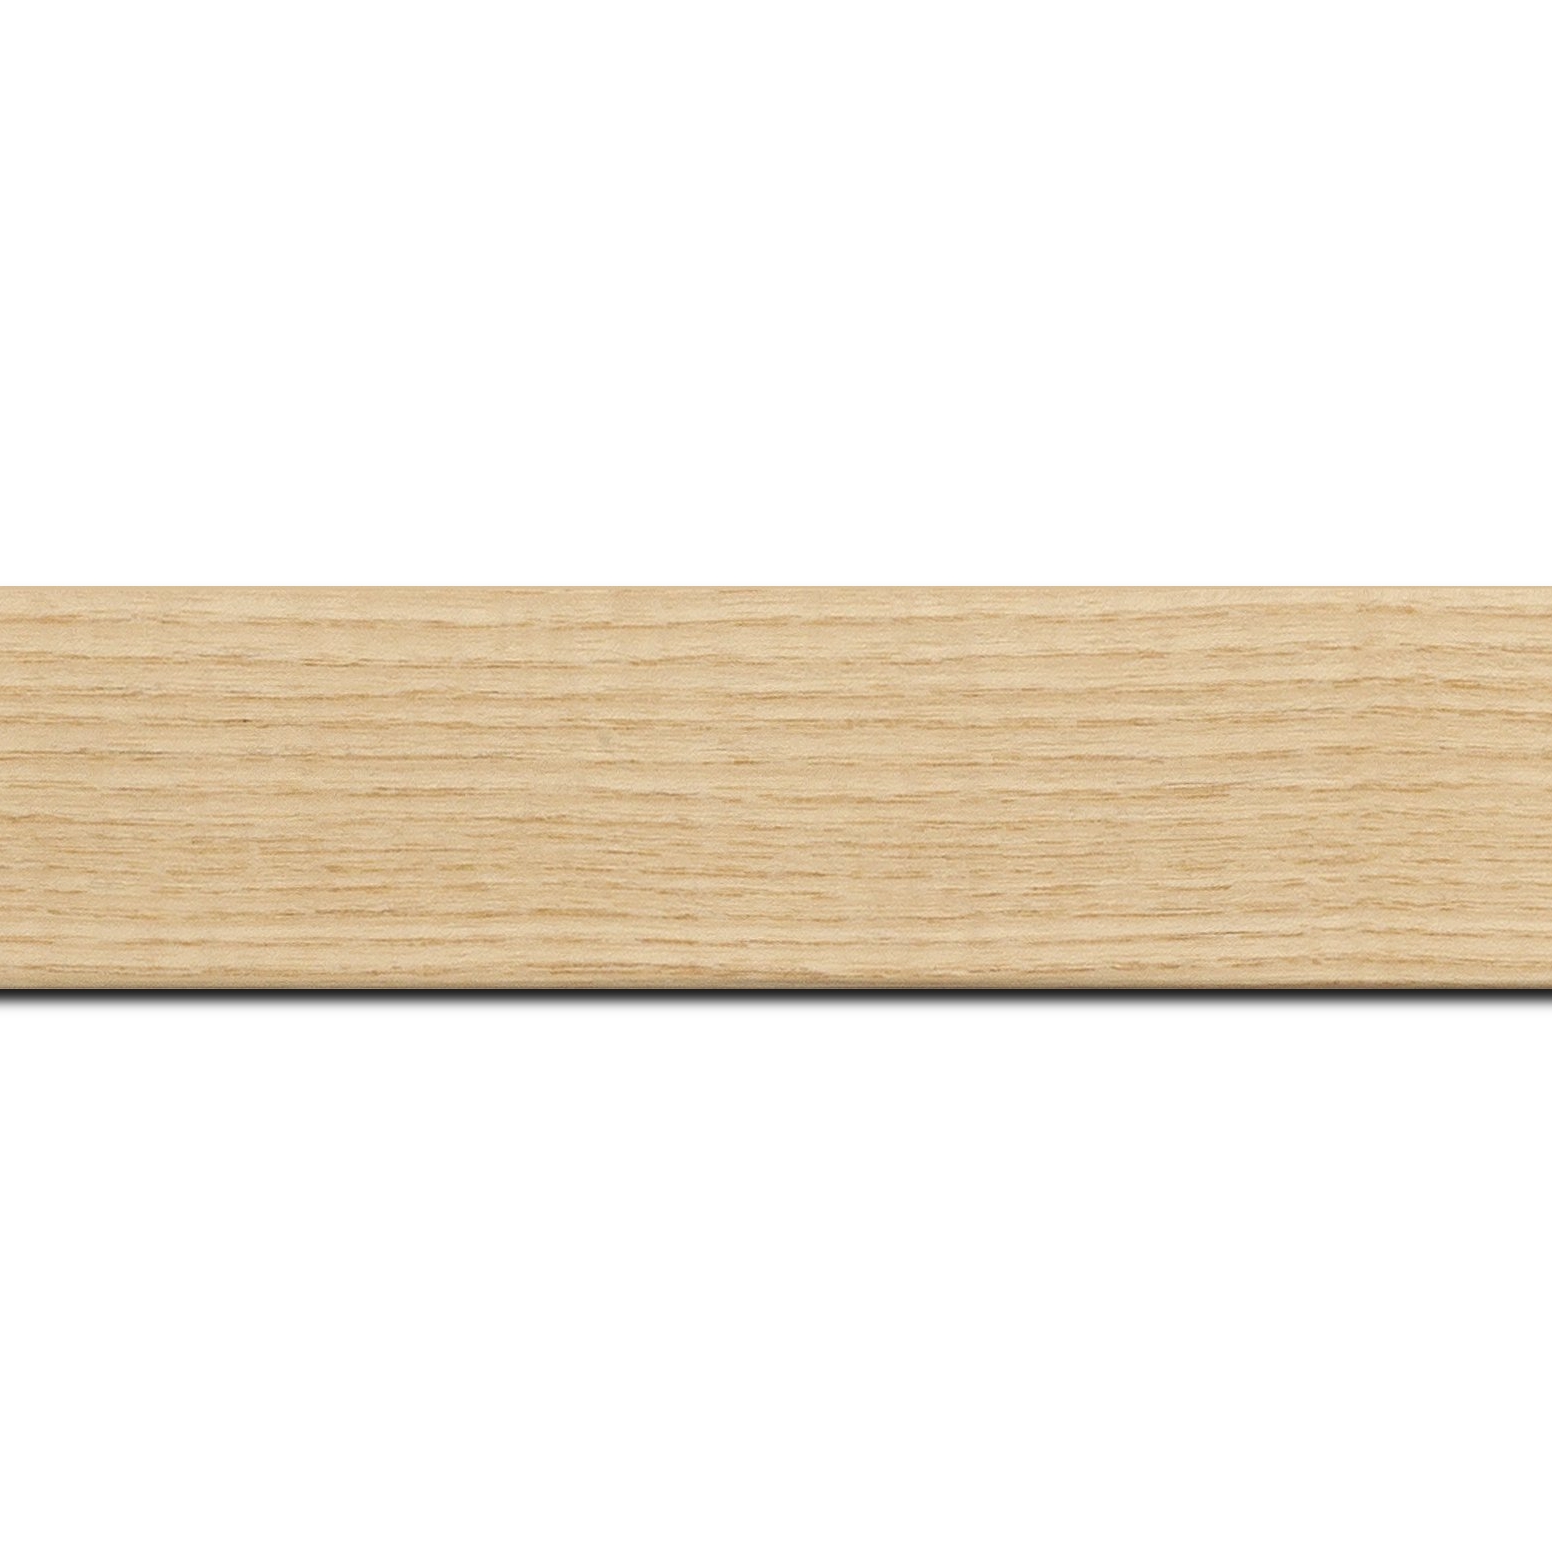 Pack par 12m, bois profil plat largeur 4cm plaquage haut de gamme frêne naturel(longueur baguette pouvant varier entre 2.40m et 3m selon arrivage des bois)